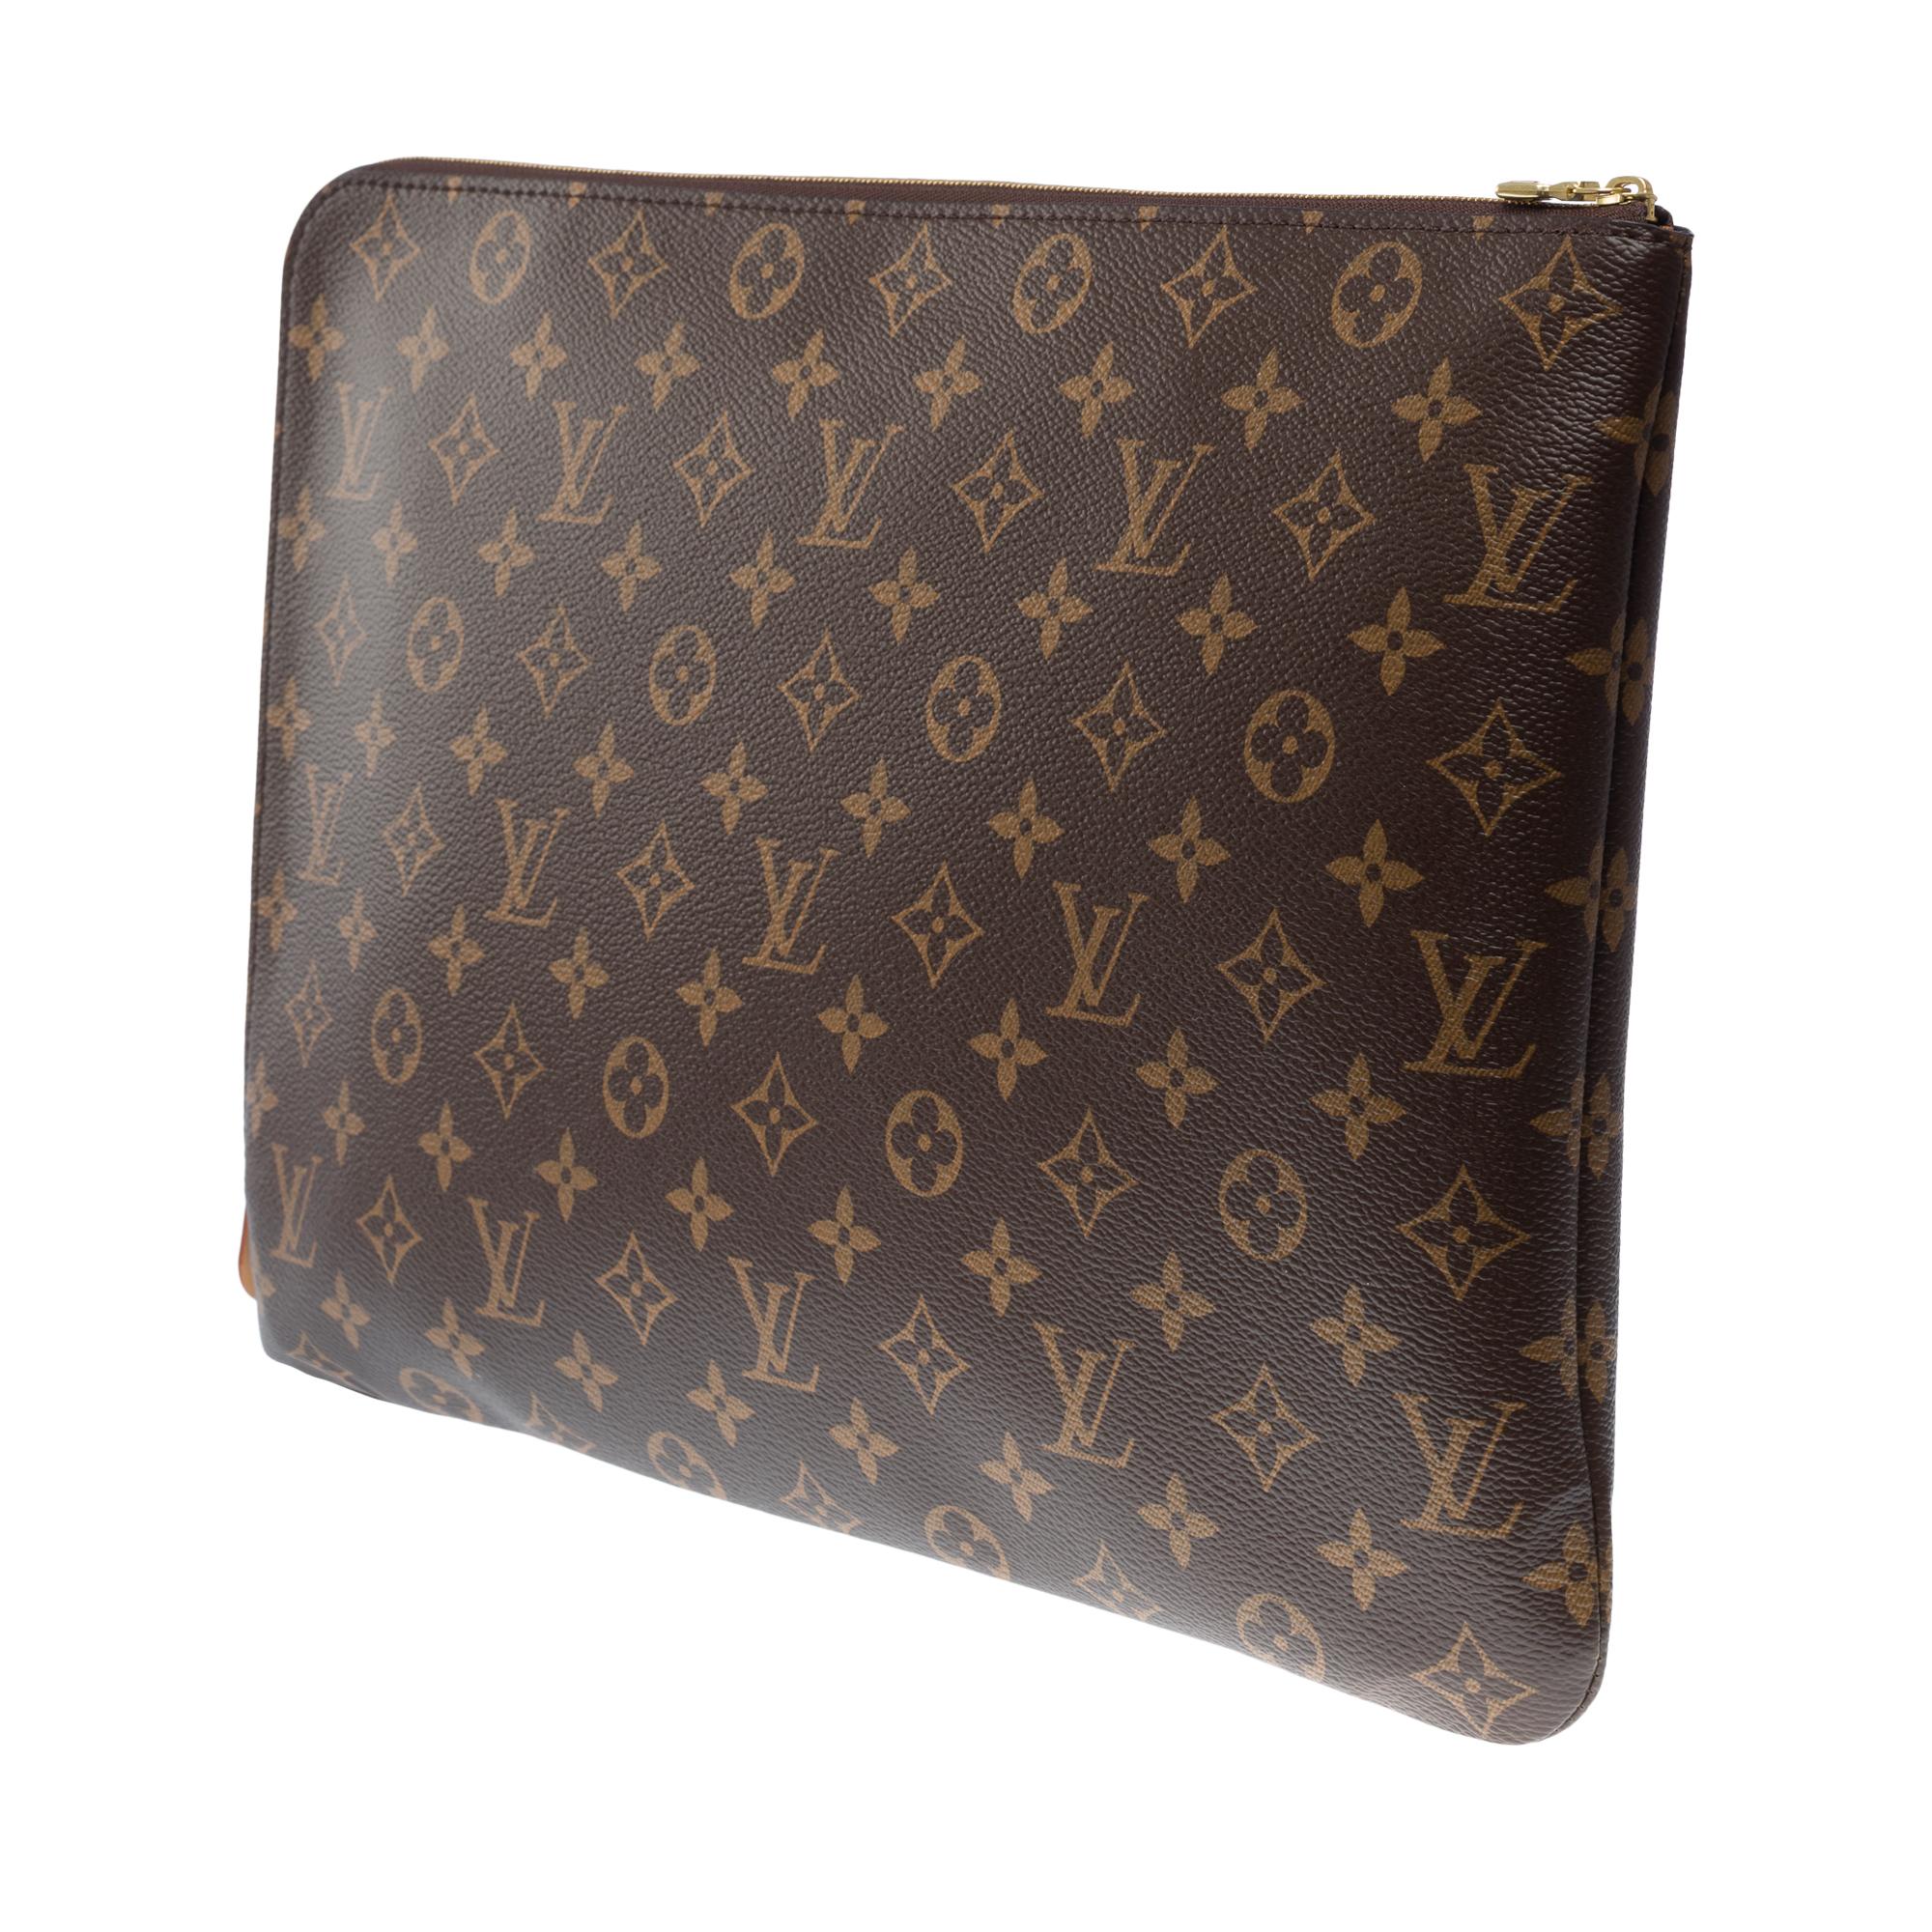 New Louis Vuitton Travel Briefcase in brown monogram canvas, GHW 2